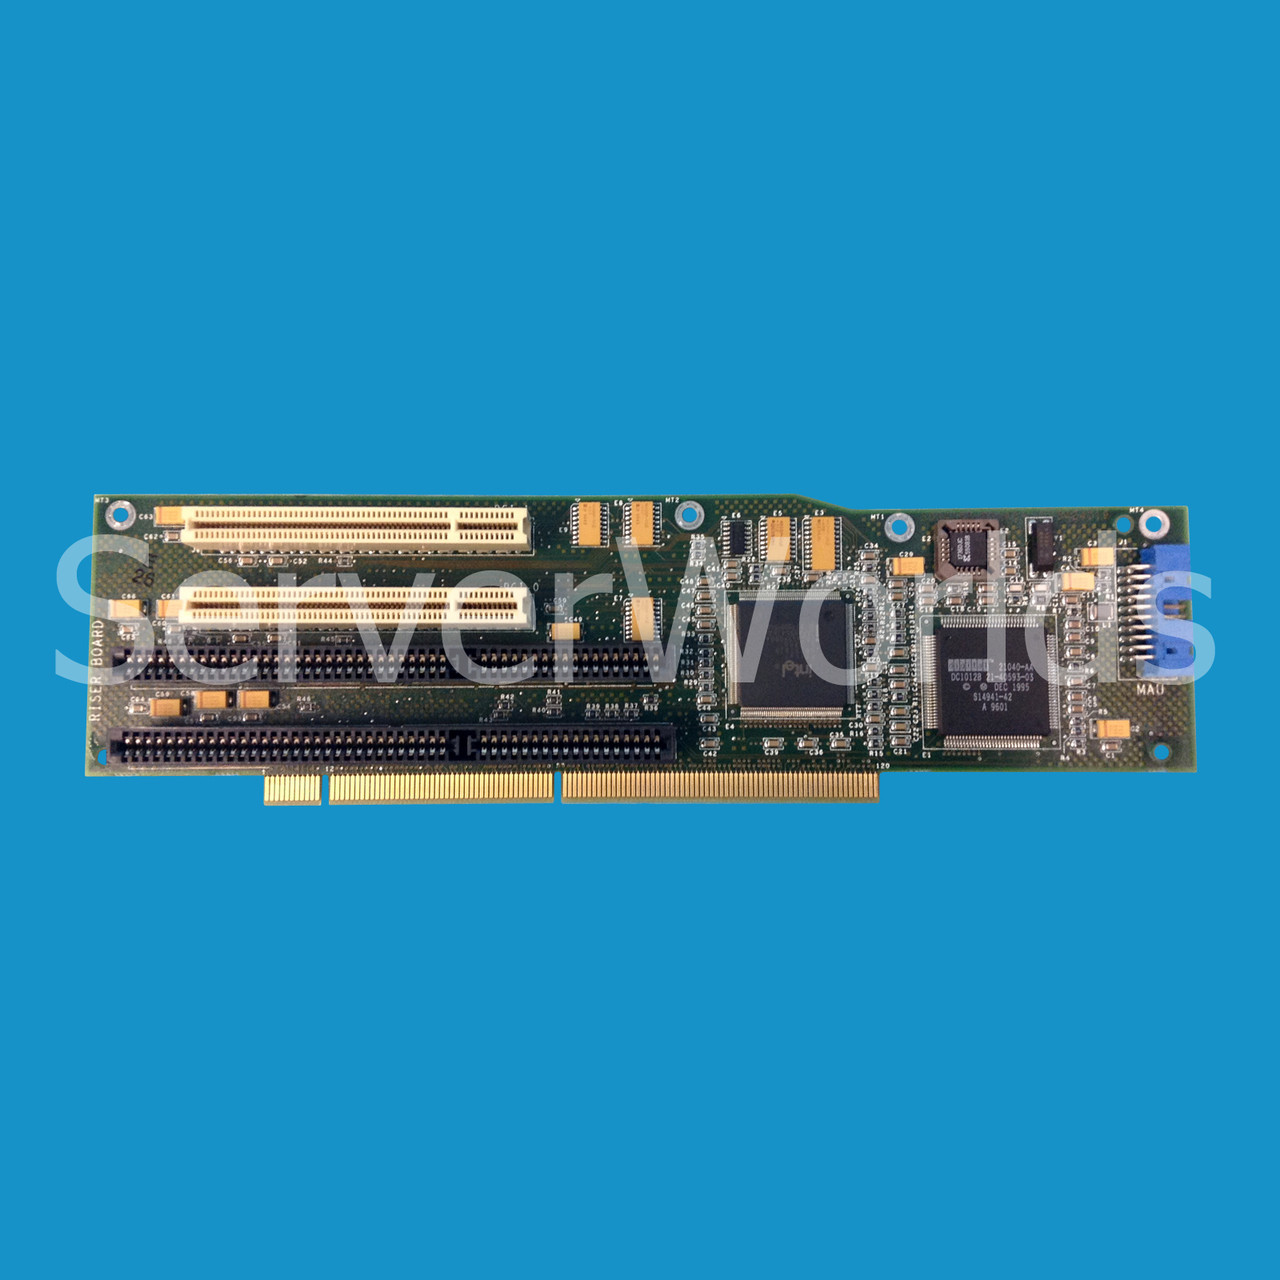 HP 54-24119-01 AXP200 M3 Riser Card